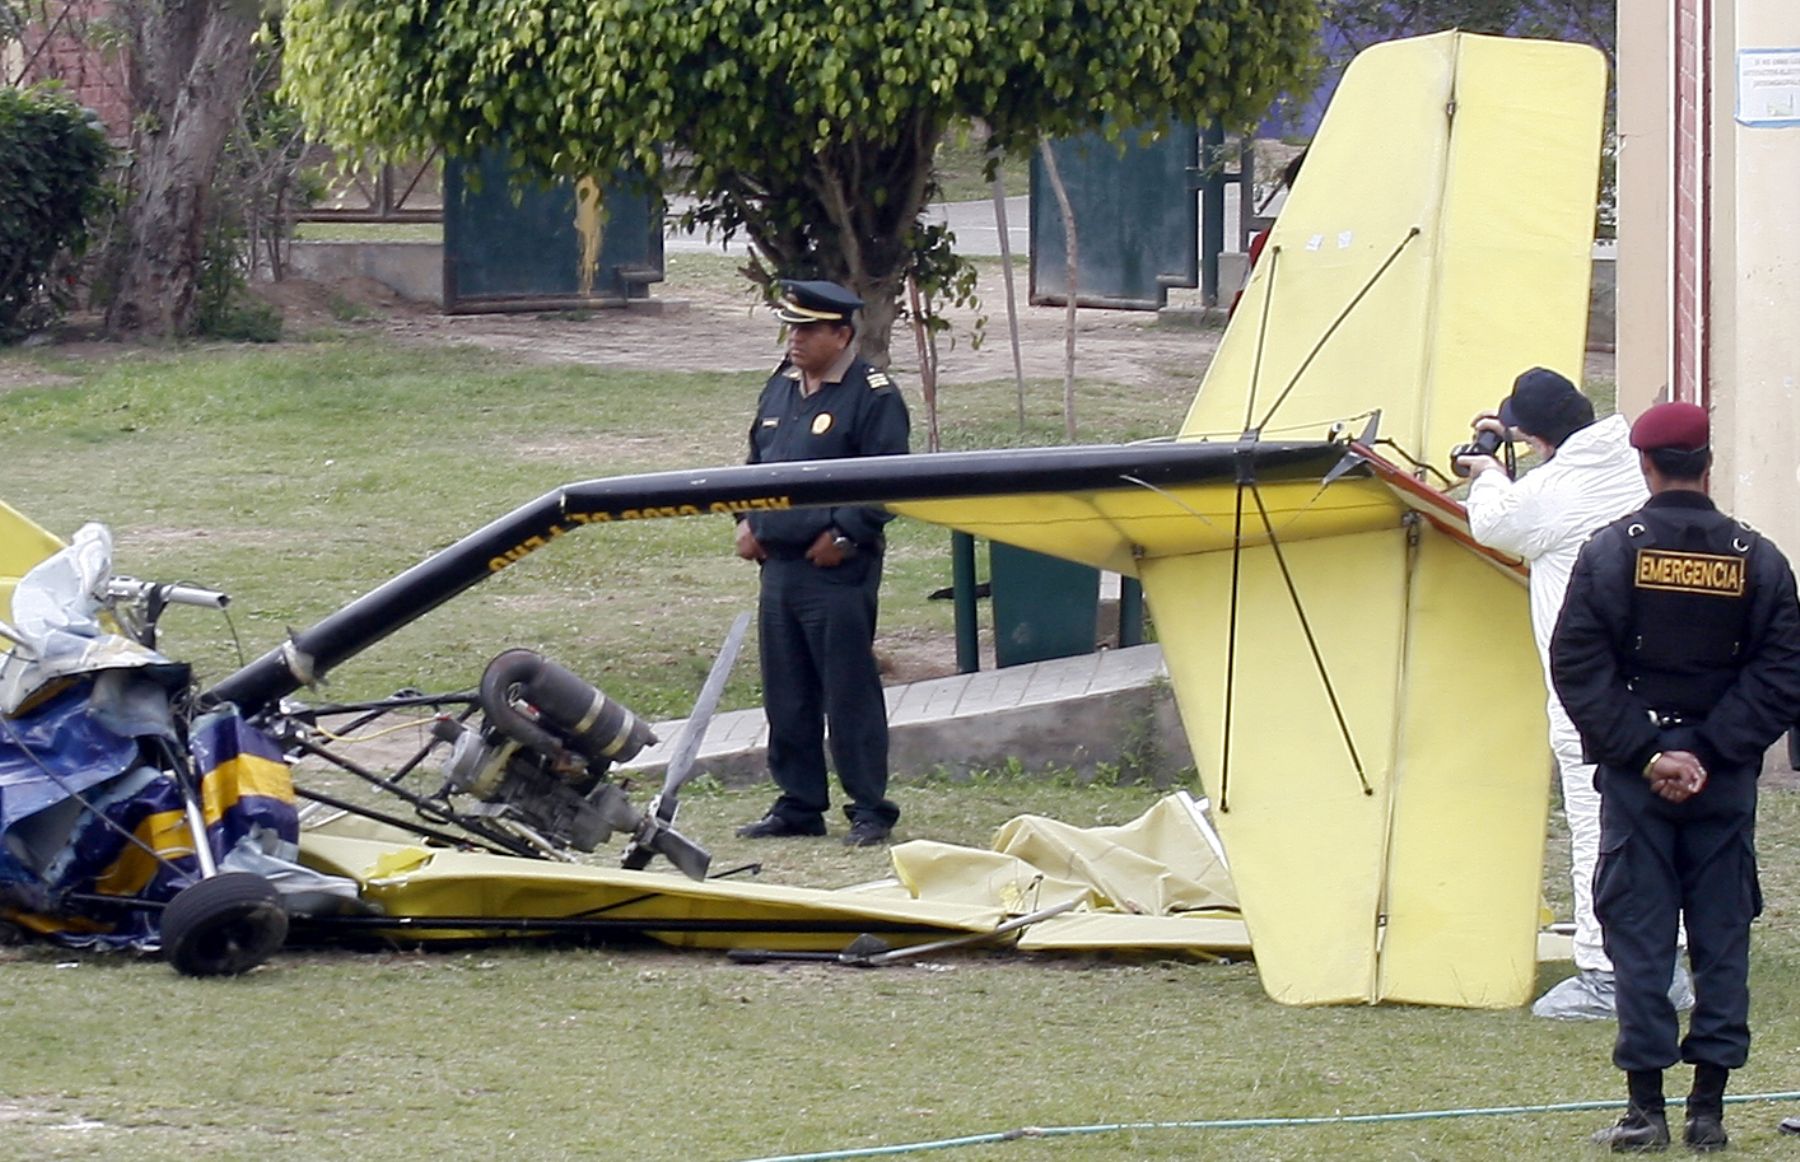 Avioneta se estrella en el Colegio Laura Alva Saldaña de Barranco y deja dos muertos. Foto. ANDINA/Stephanie Zollner.